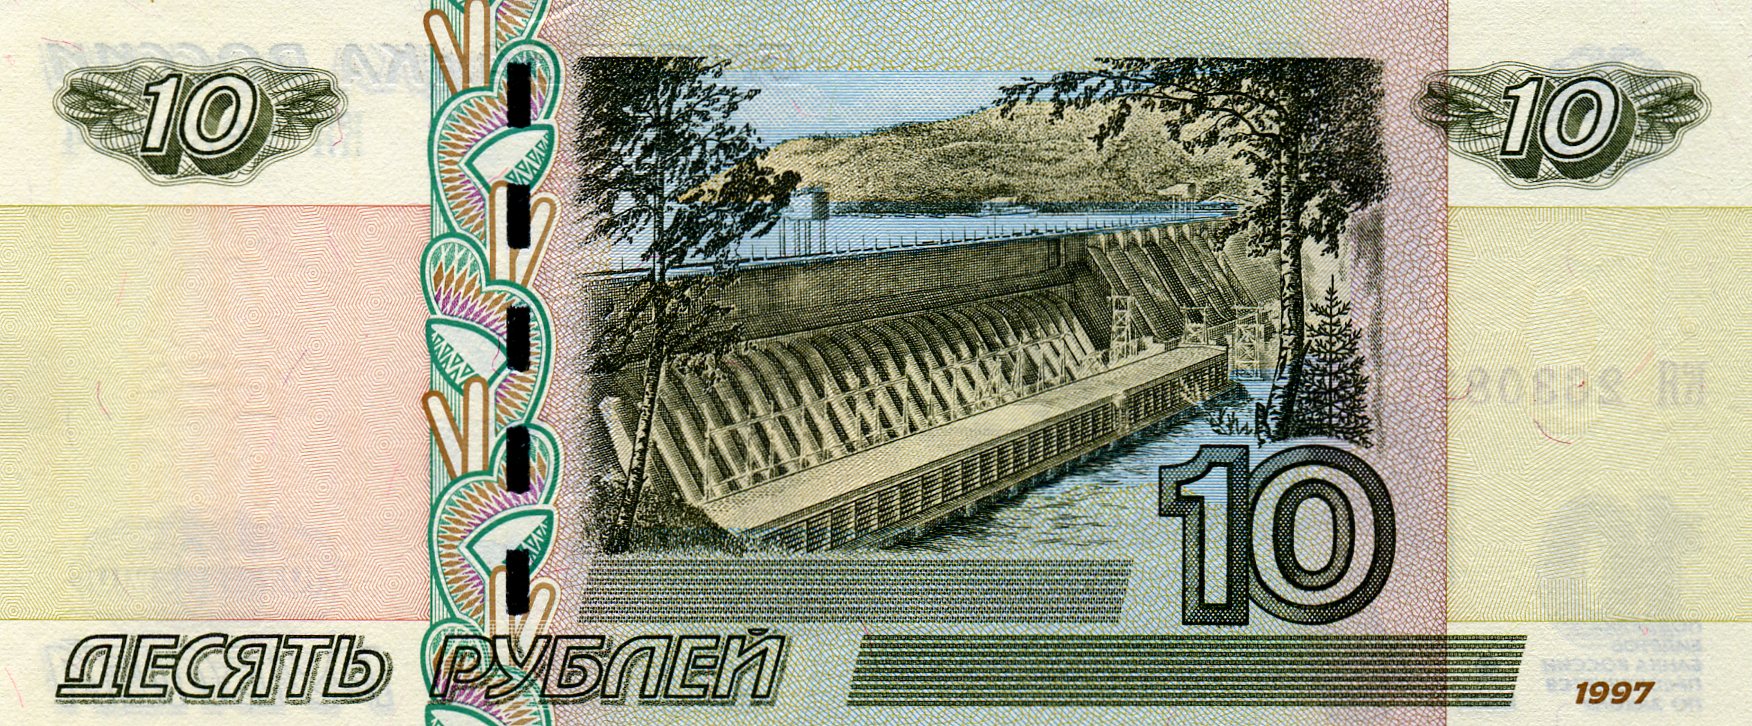 10 рублей 1997 года. Реверс. Реферат Рефератович.